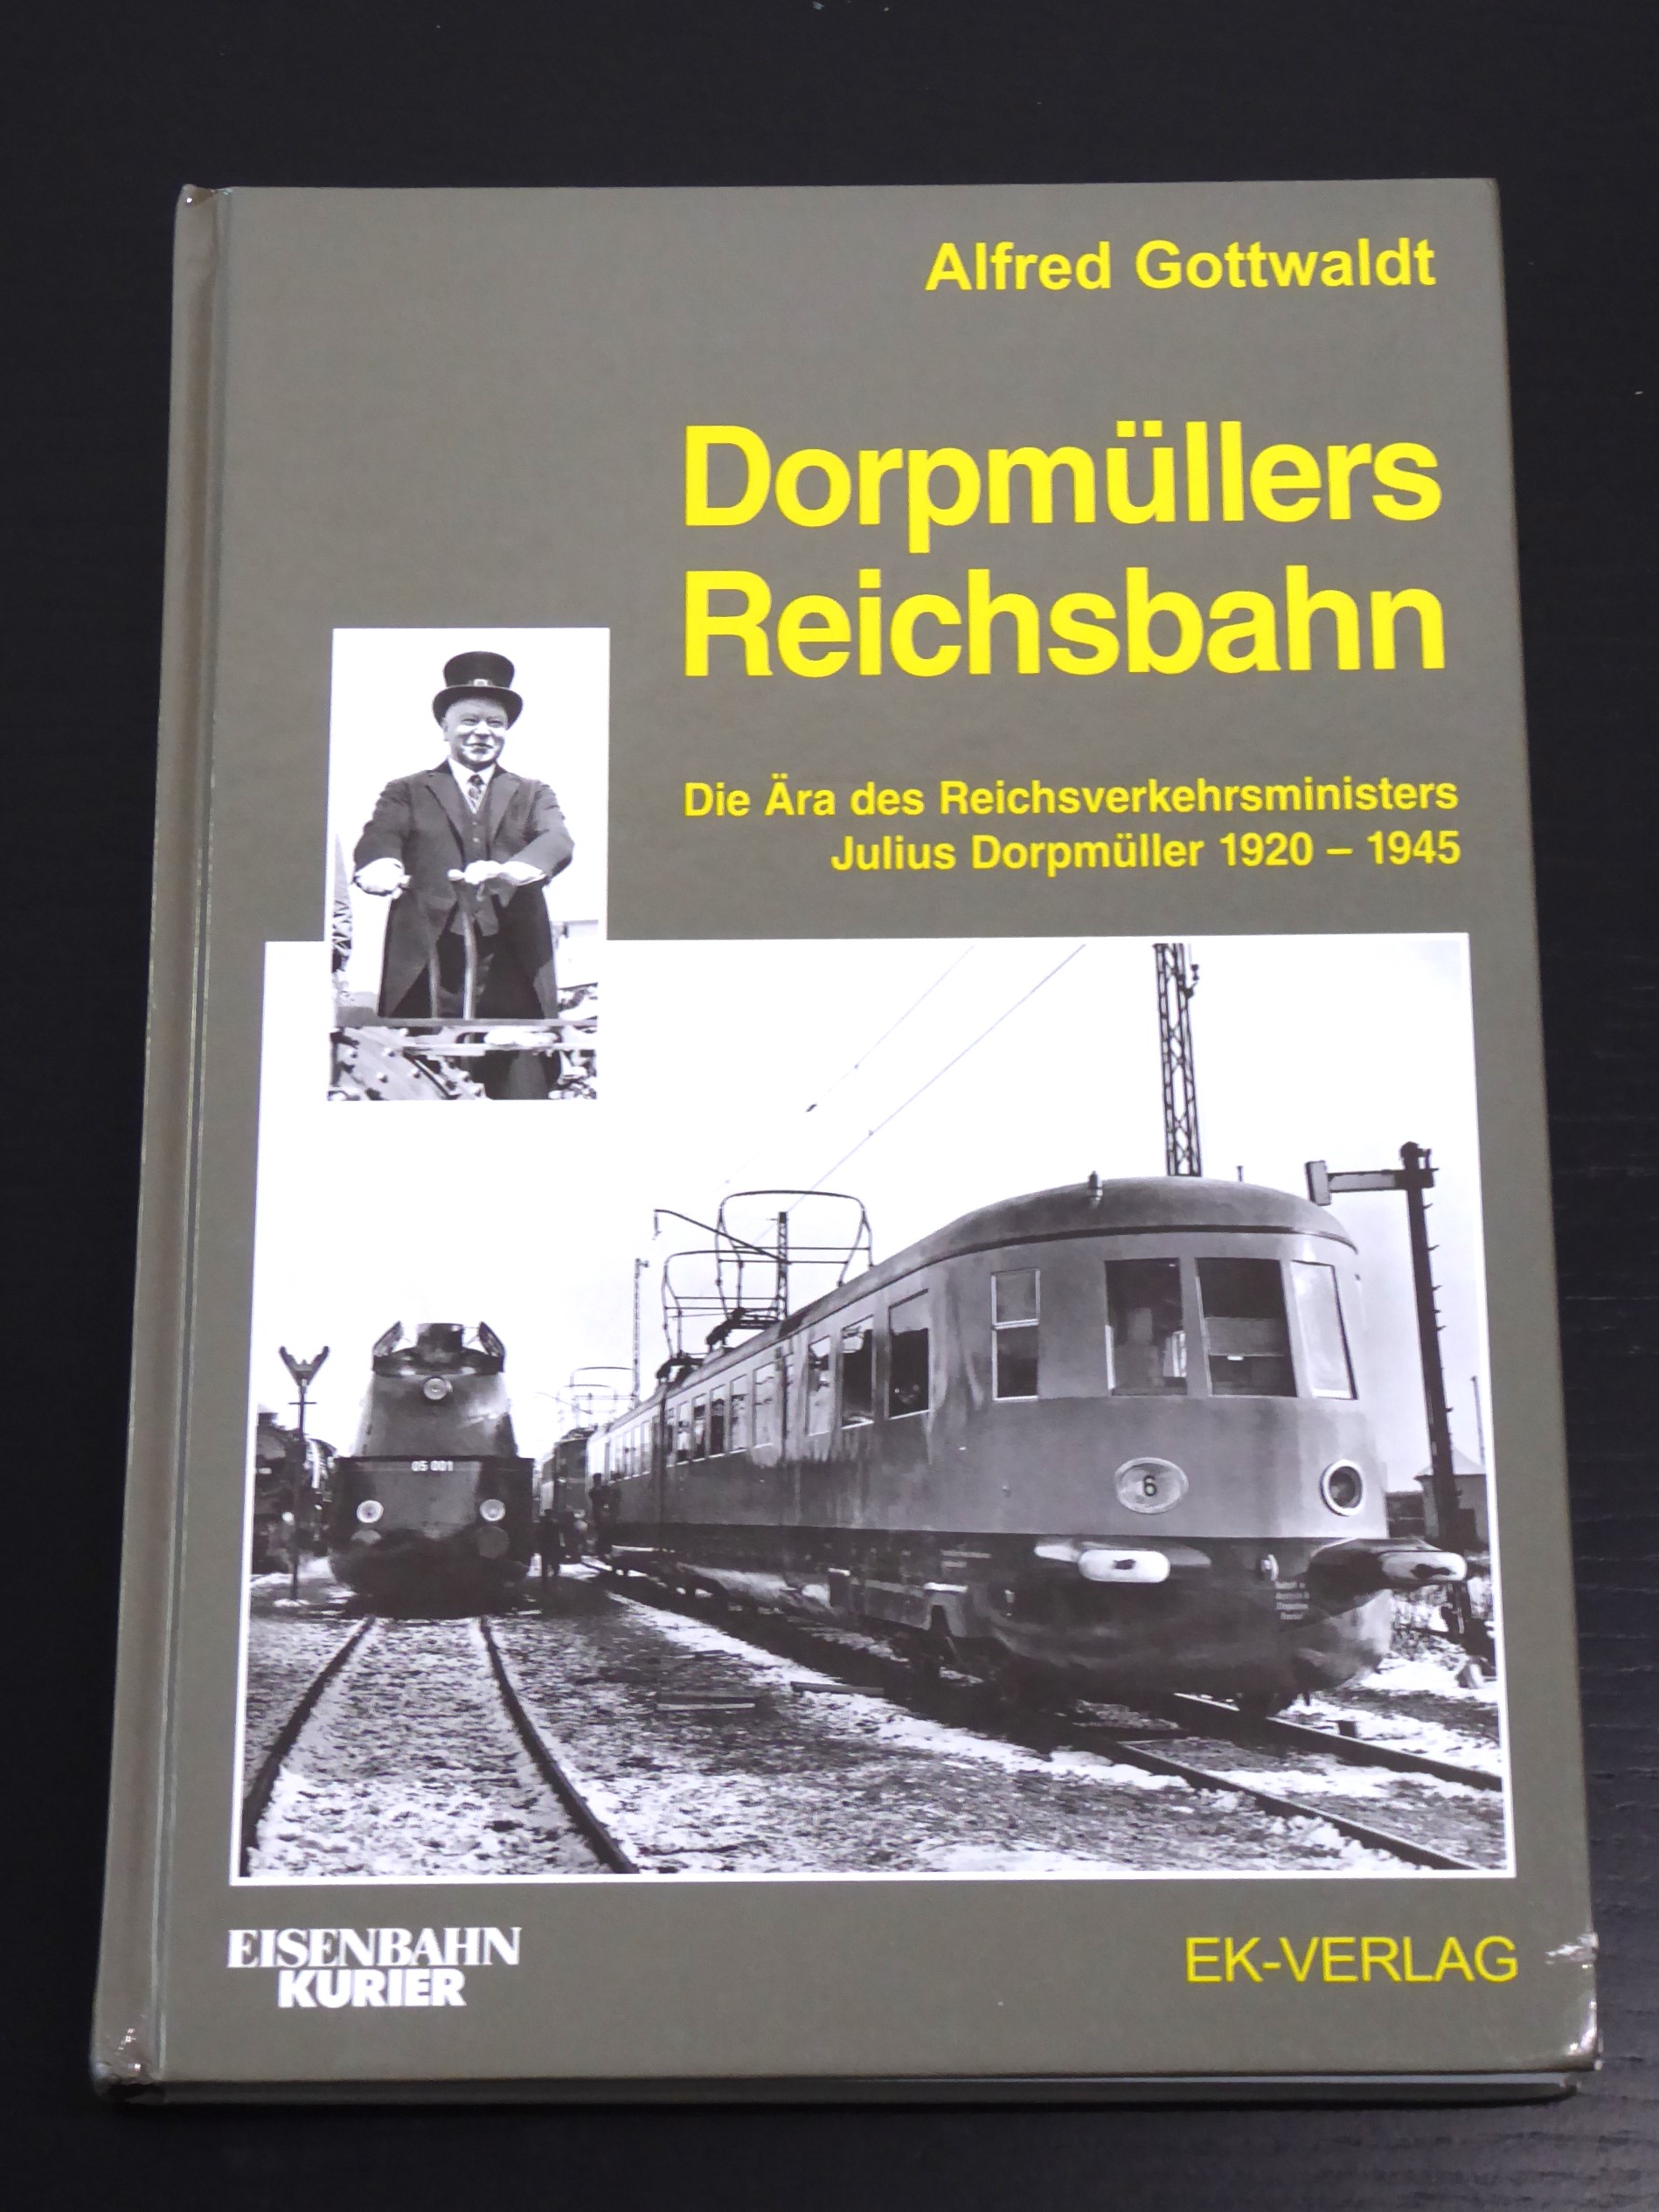 Dorpmüllers Reichsbahn: die Ära des Reichsverkehrsministers Julius Dorpmüller ; 1920 - 1945 - Gottwaldt, Aldred